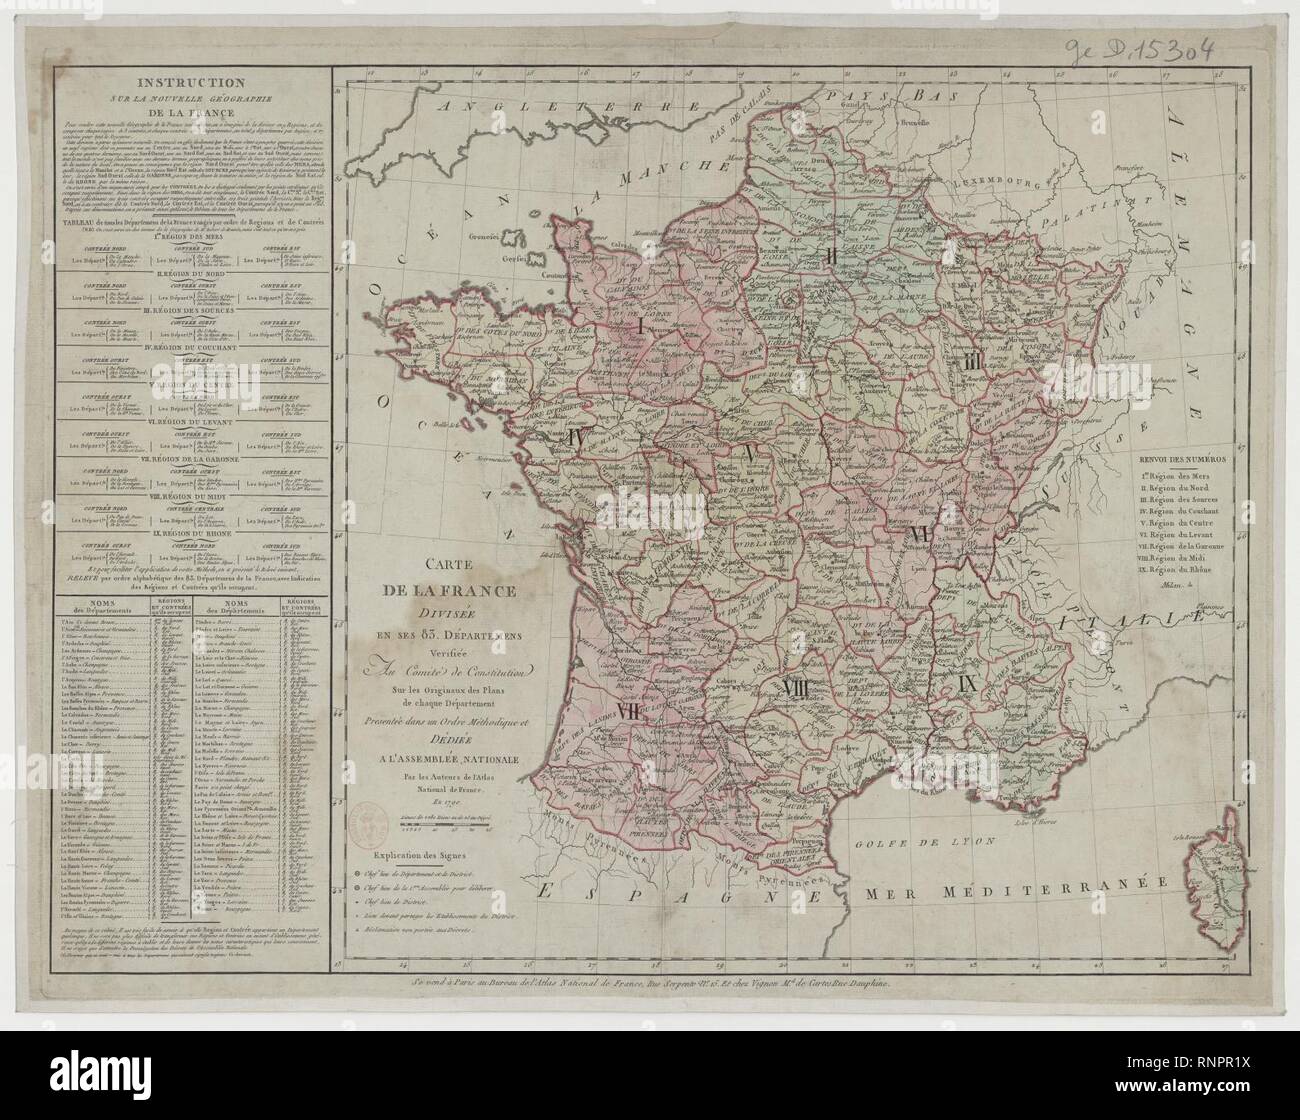 Carte de la France divisée en ses 83 Départemens - 1790 - btv1b8493178s  Stock Photo - Alamy